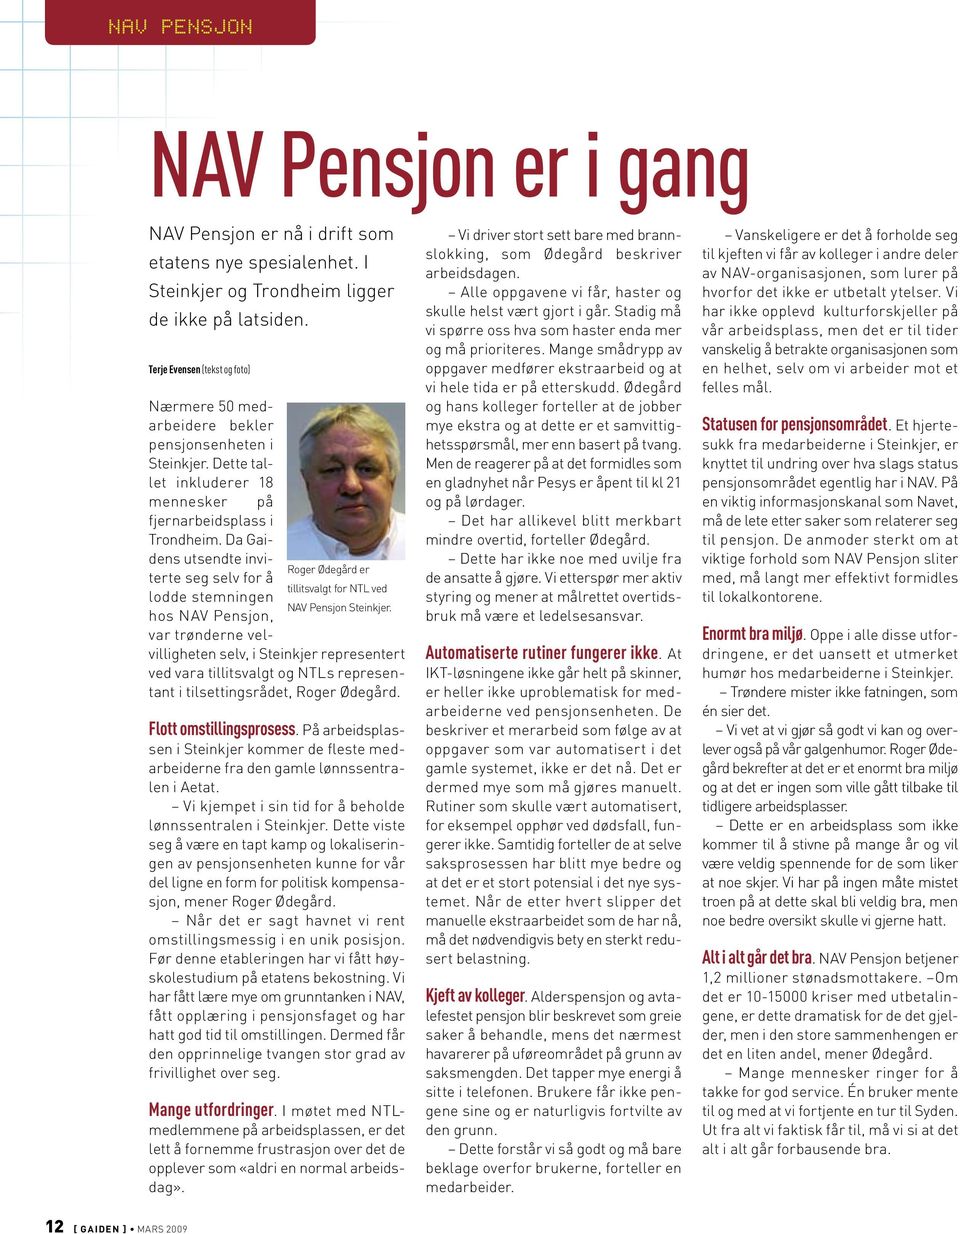 Da Gaidens utsendte inviterte seg selv for å Roger Ødegård er tillitsvalgt for NTL ved lodde stemningen NAV Pensjon Steinkjer.